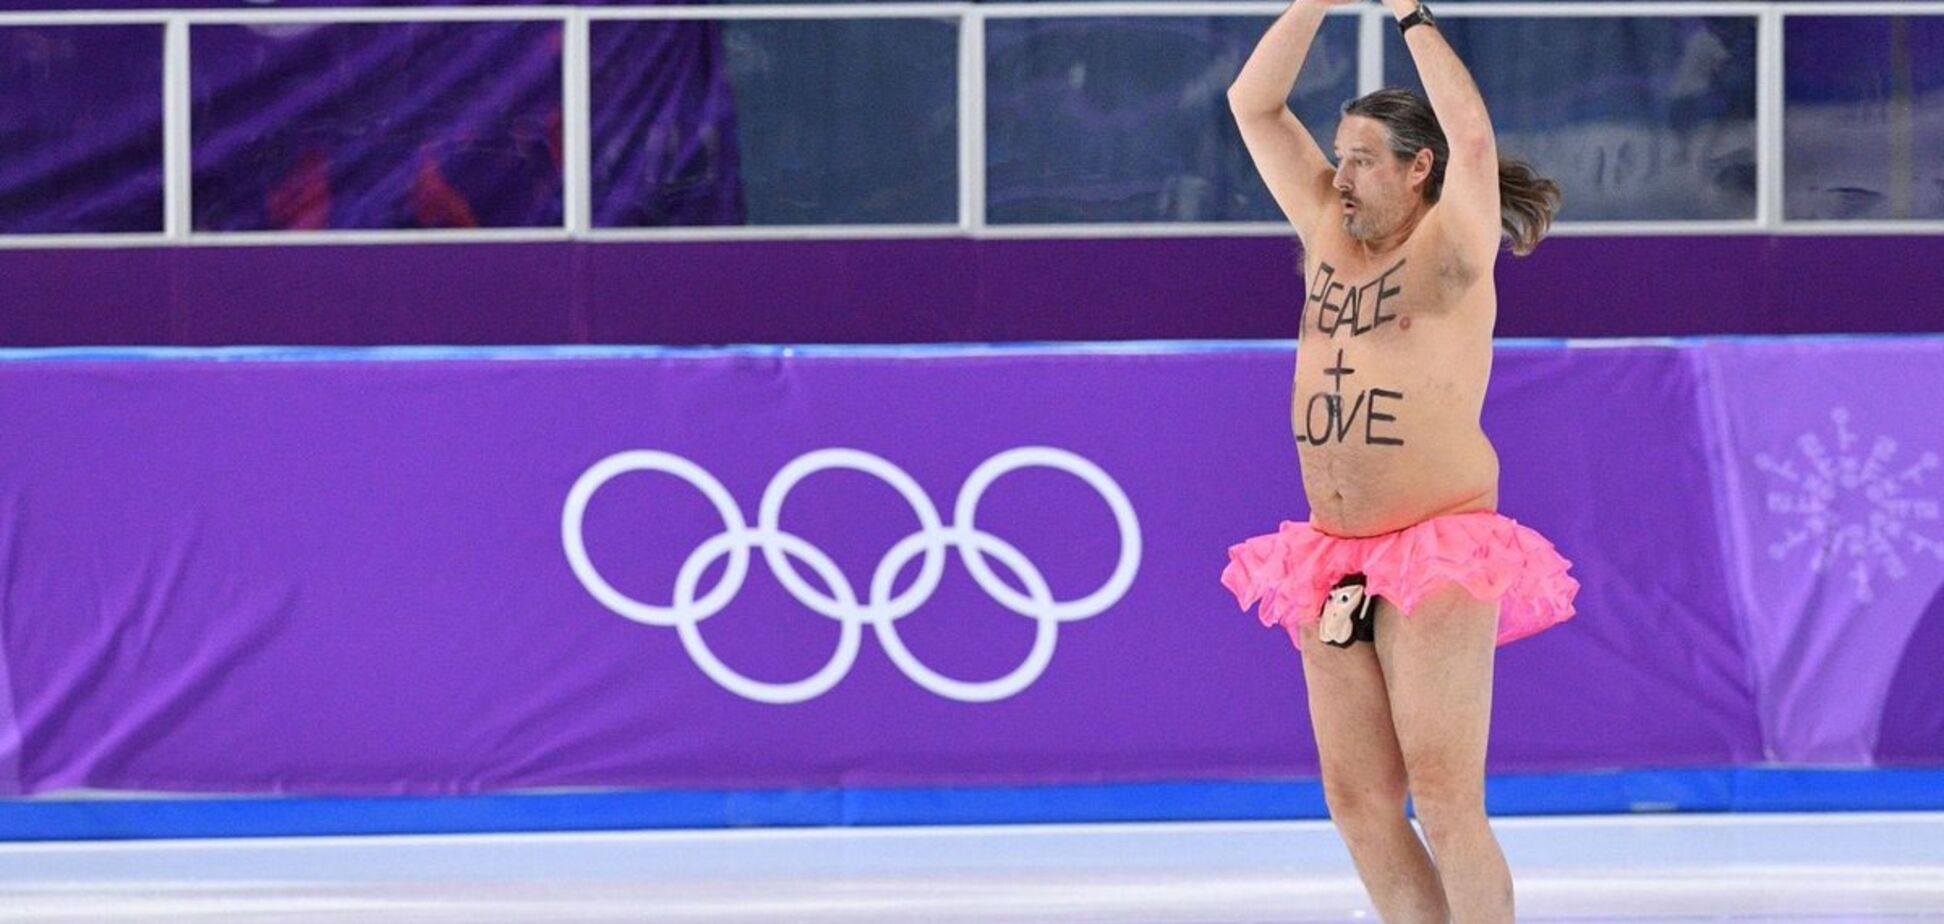 На Олімпіаді уболівальник переліз через огородження, роздягнувся і влаштував на льоду безсоромне шоу